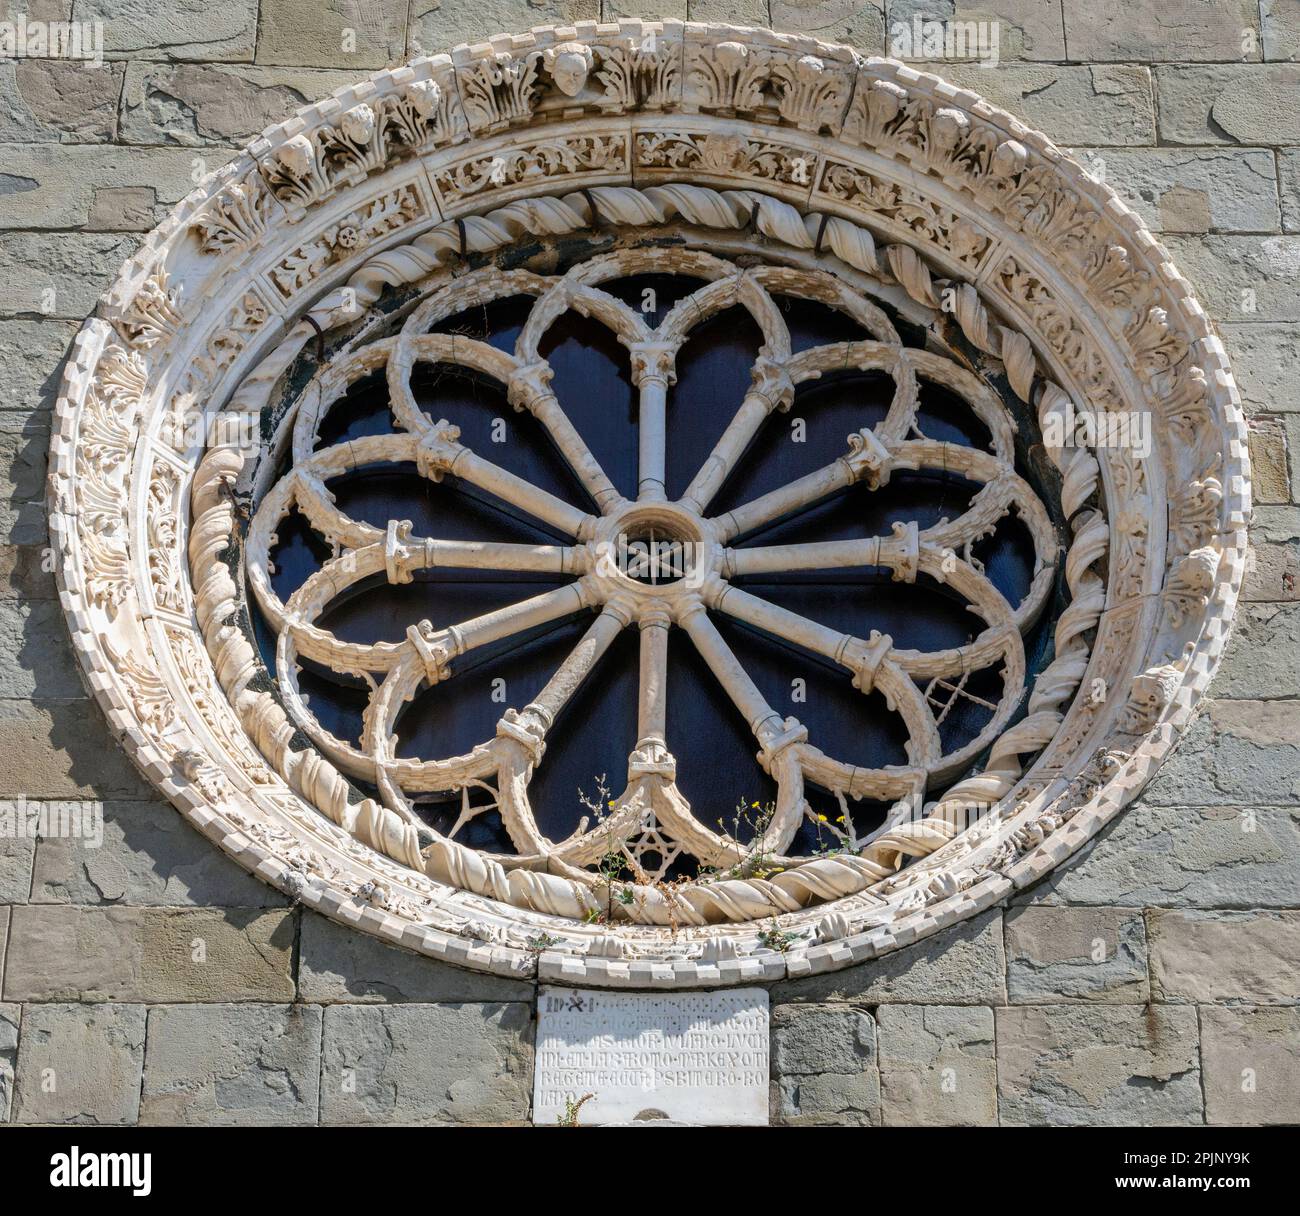 Façade et rosace de l'église de San Lorenzo, Manarola, la Spezia, Ligurie, Italie. L'église de style gothique ligure date de la mi-14th ce Banque D'Images